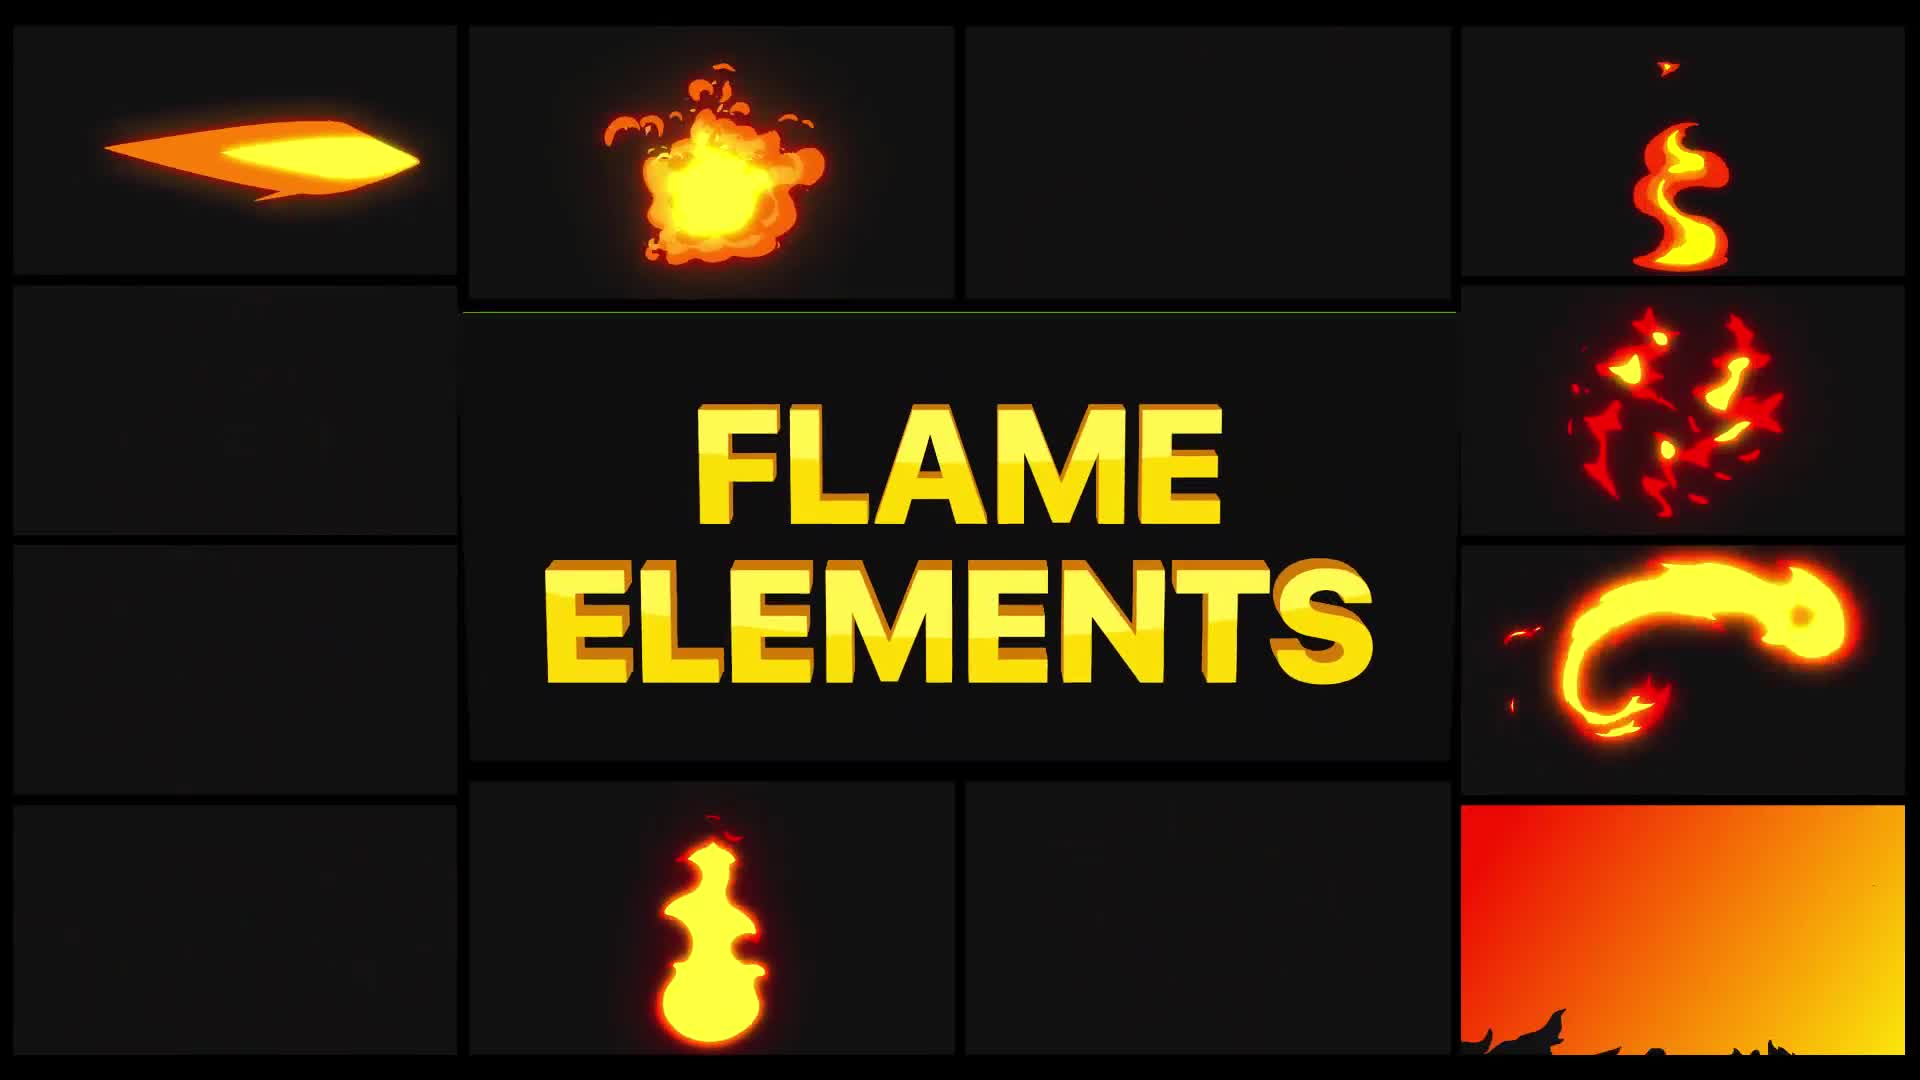 Flame Elements | Premiere Pro MOGRT Videohive 28895835 Premiere Pro Image 1